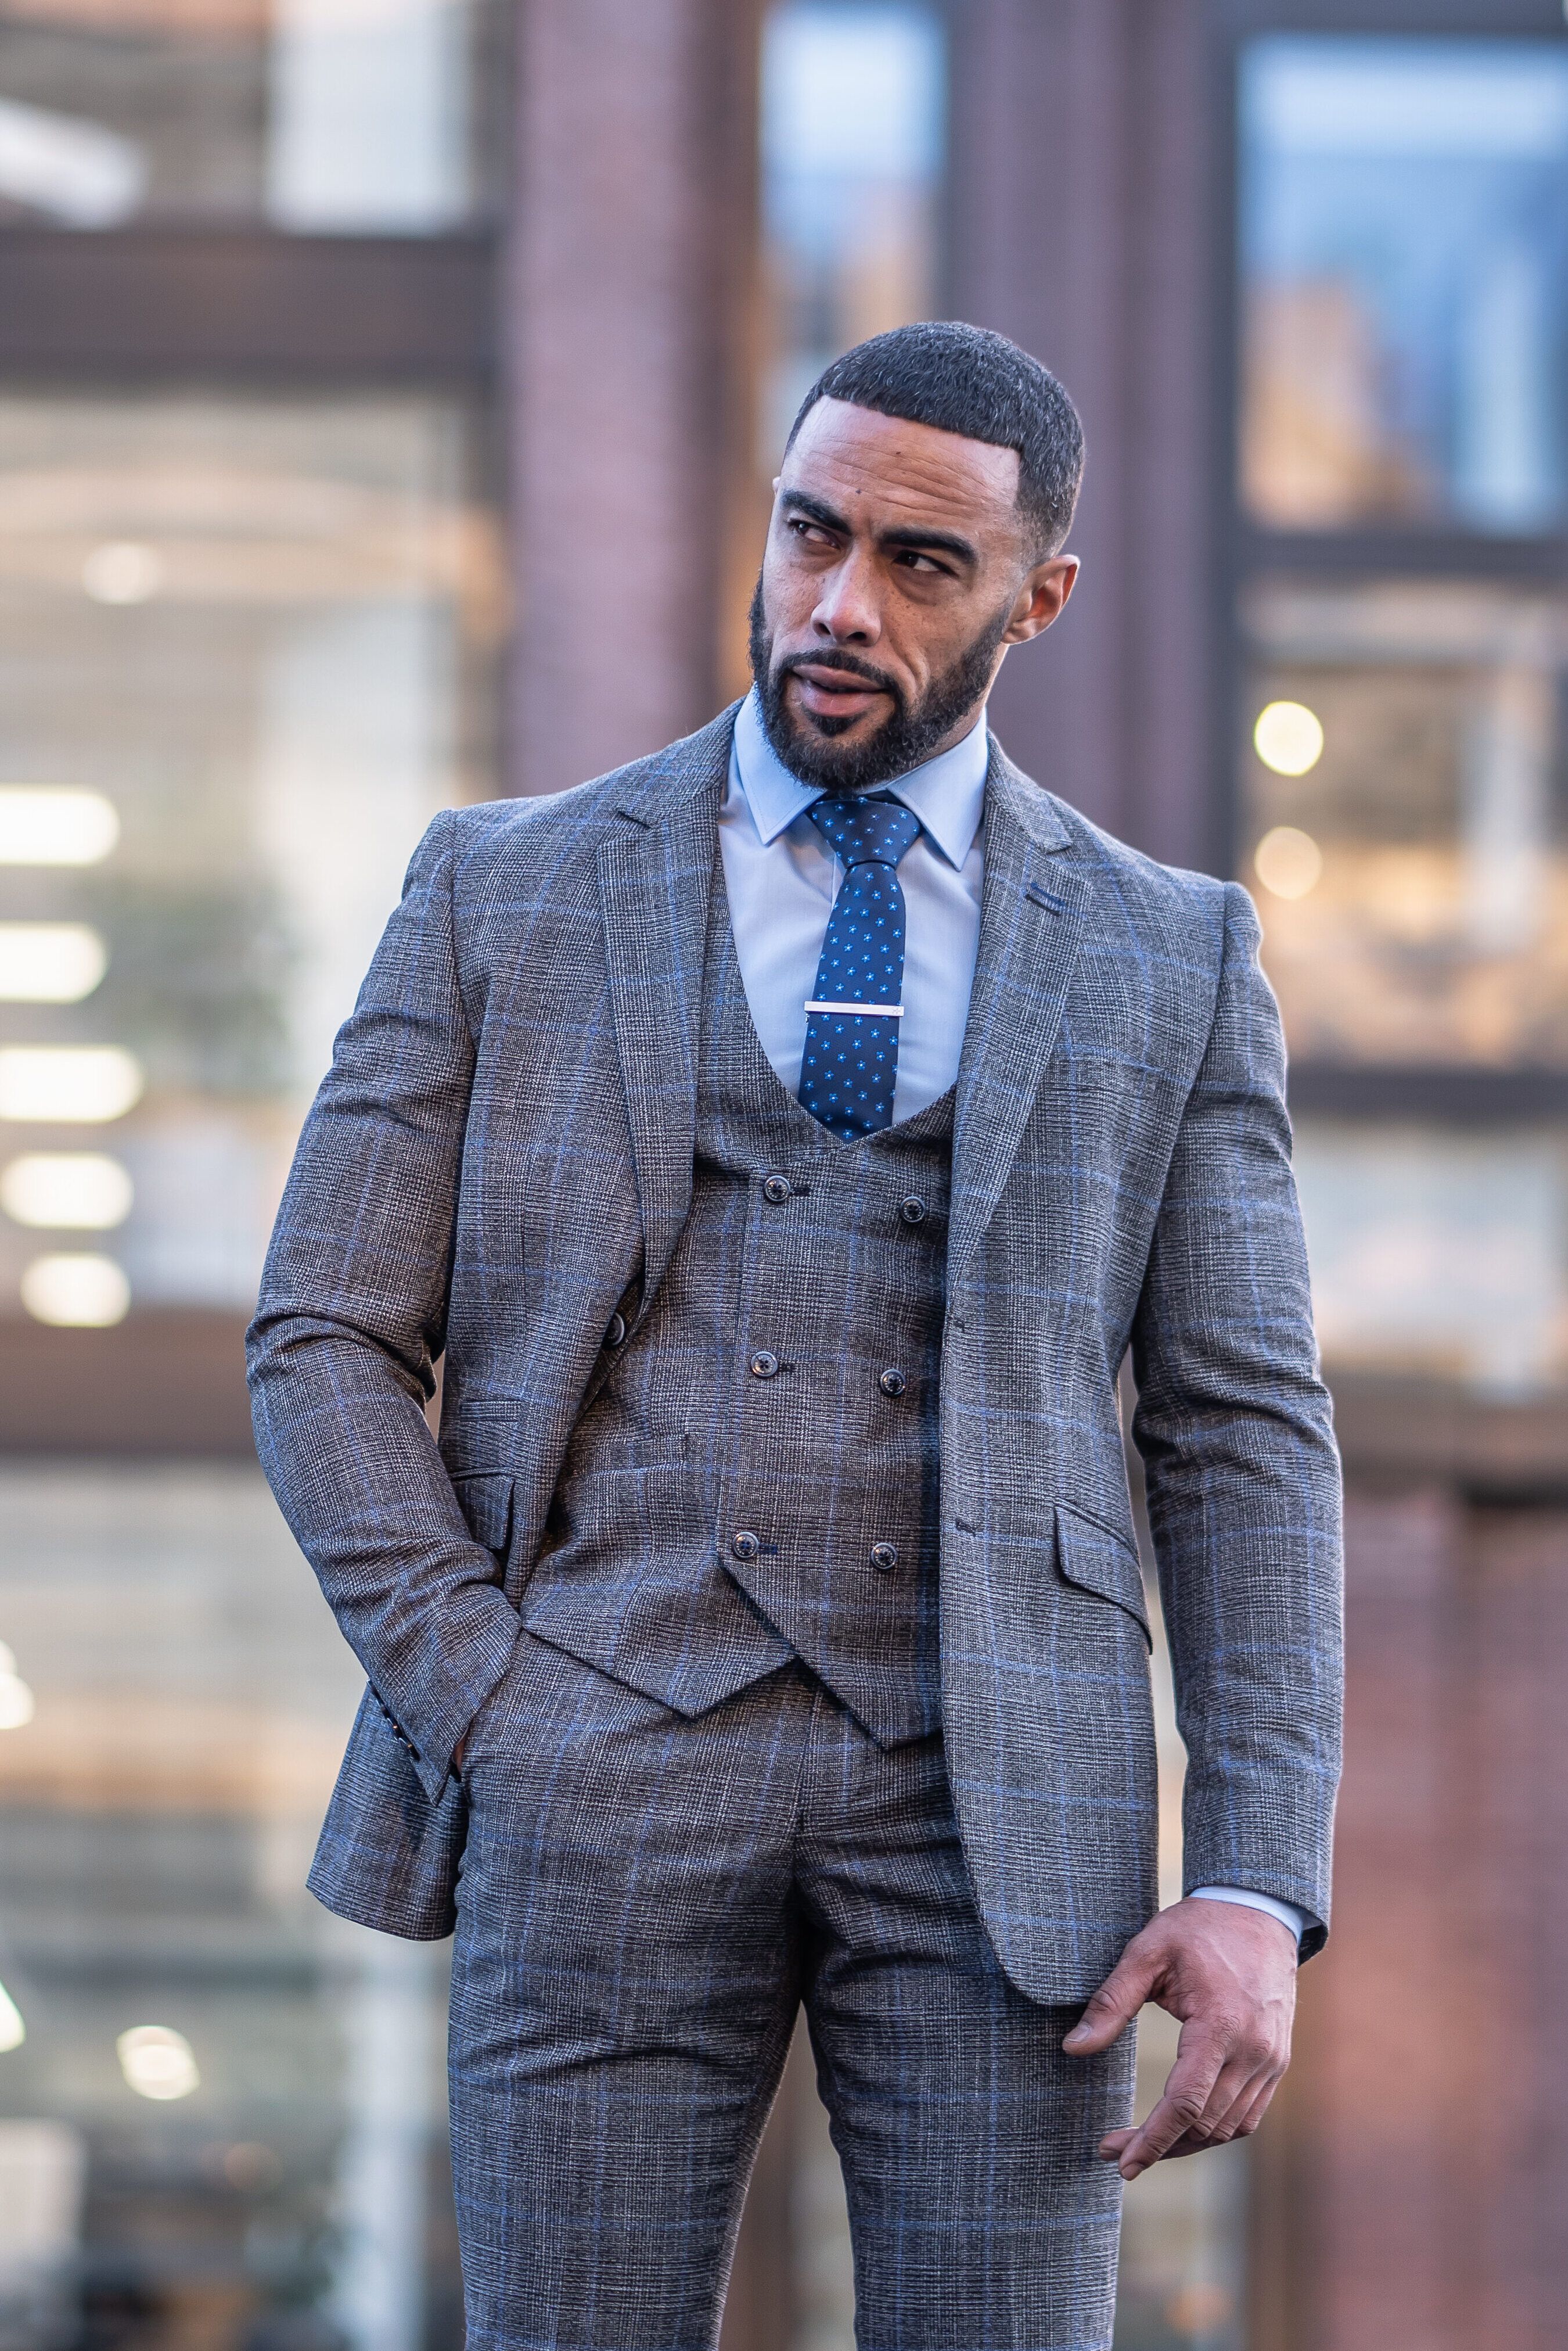 Men's Tweed Retro Check Grey Suit - POWER